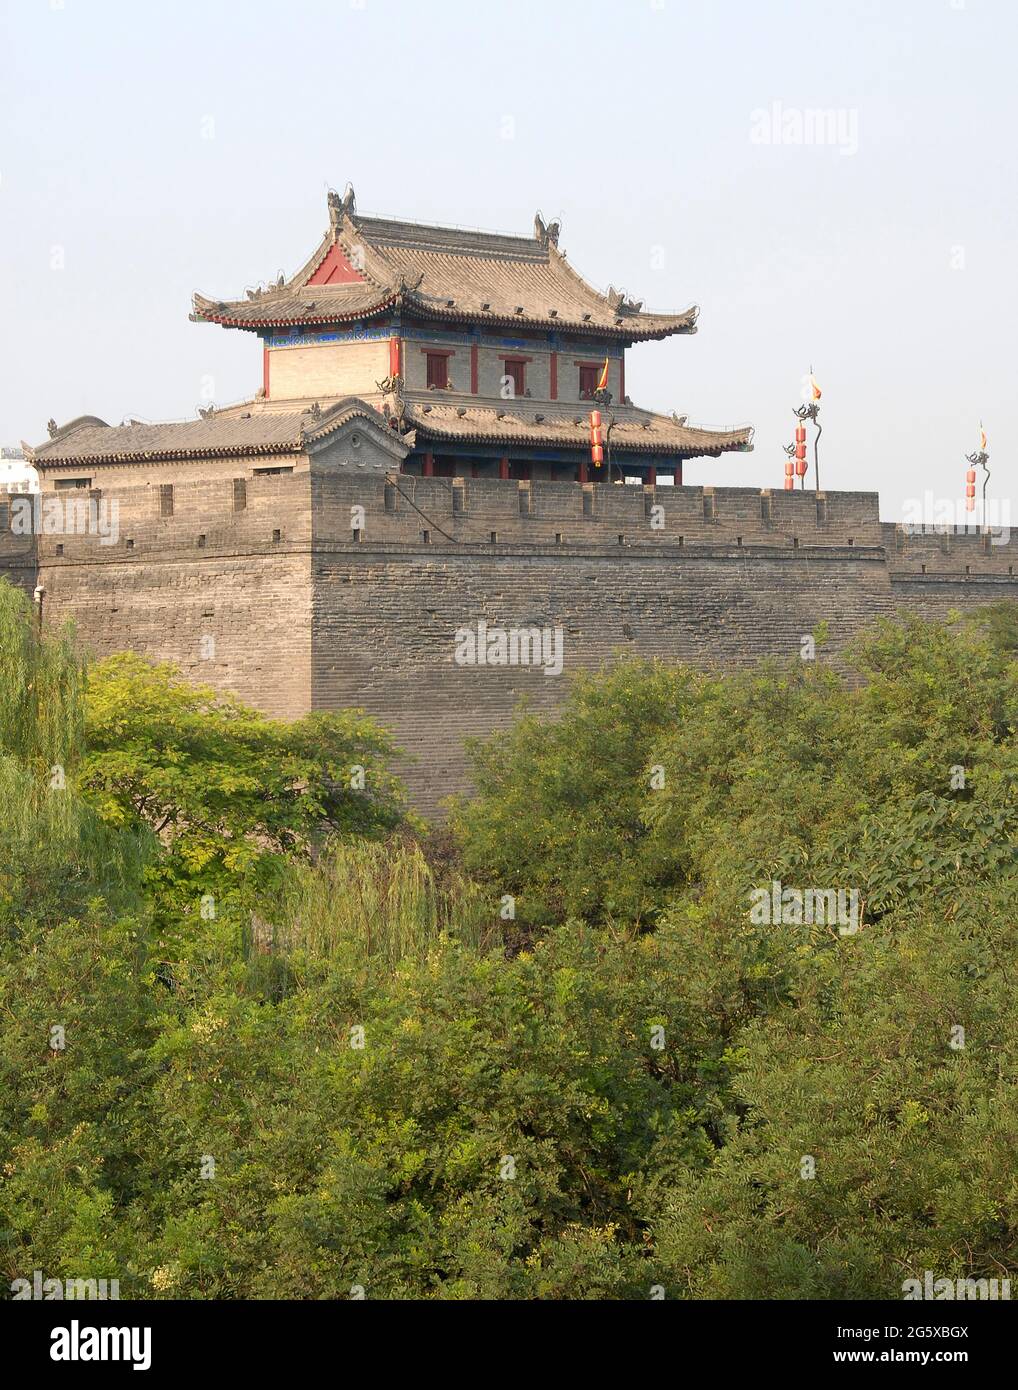 Mur de ville, Xian, province de Shaanxi, Chine. Le mur de ville de Xian est l'un des mieux conservés en Chine. Tour de guet sur le mur de la ville de Xian donnant sur les arbres. Banque D'Images